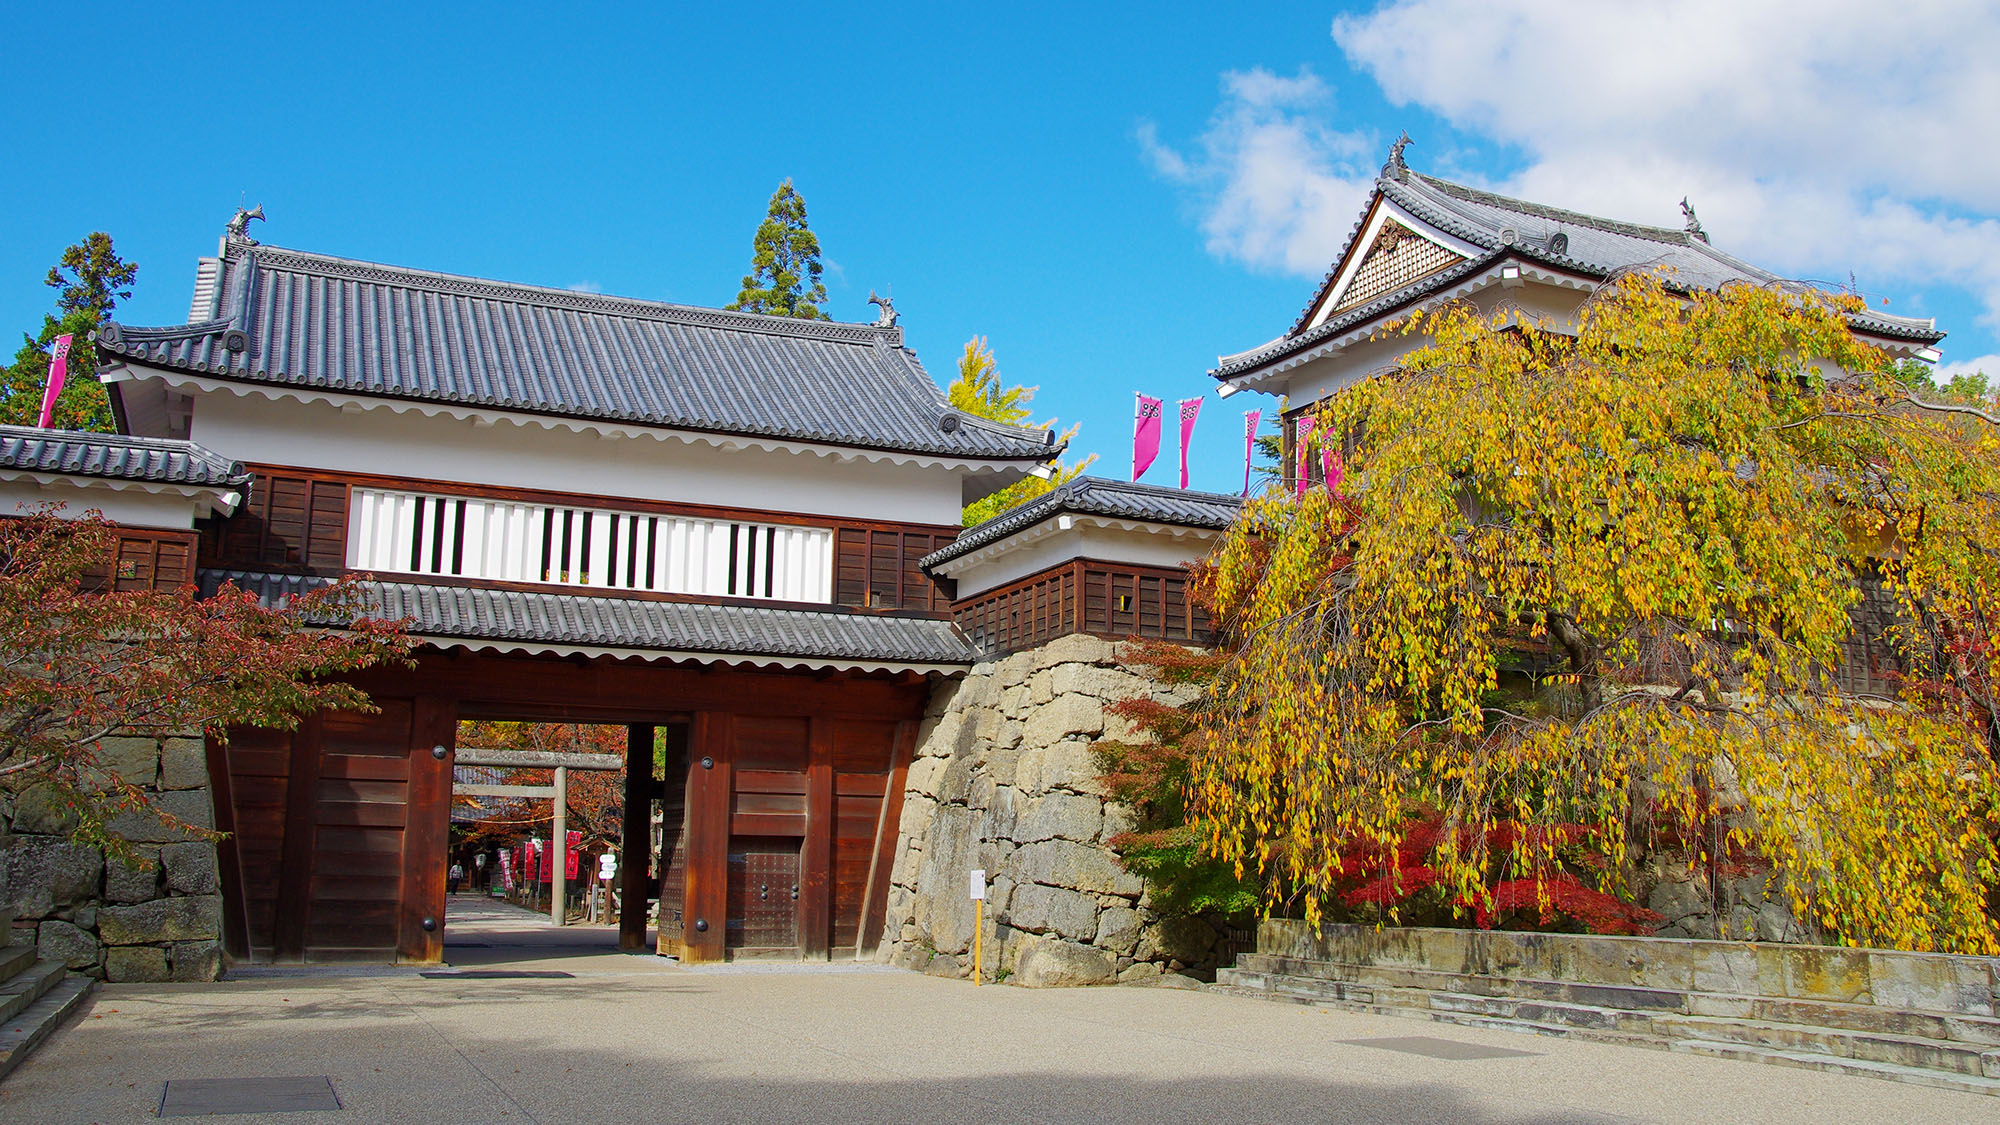 【上田城跡】真田氏の居城。桜の名所としても知られています。ホテルから車約50分です。